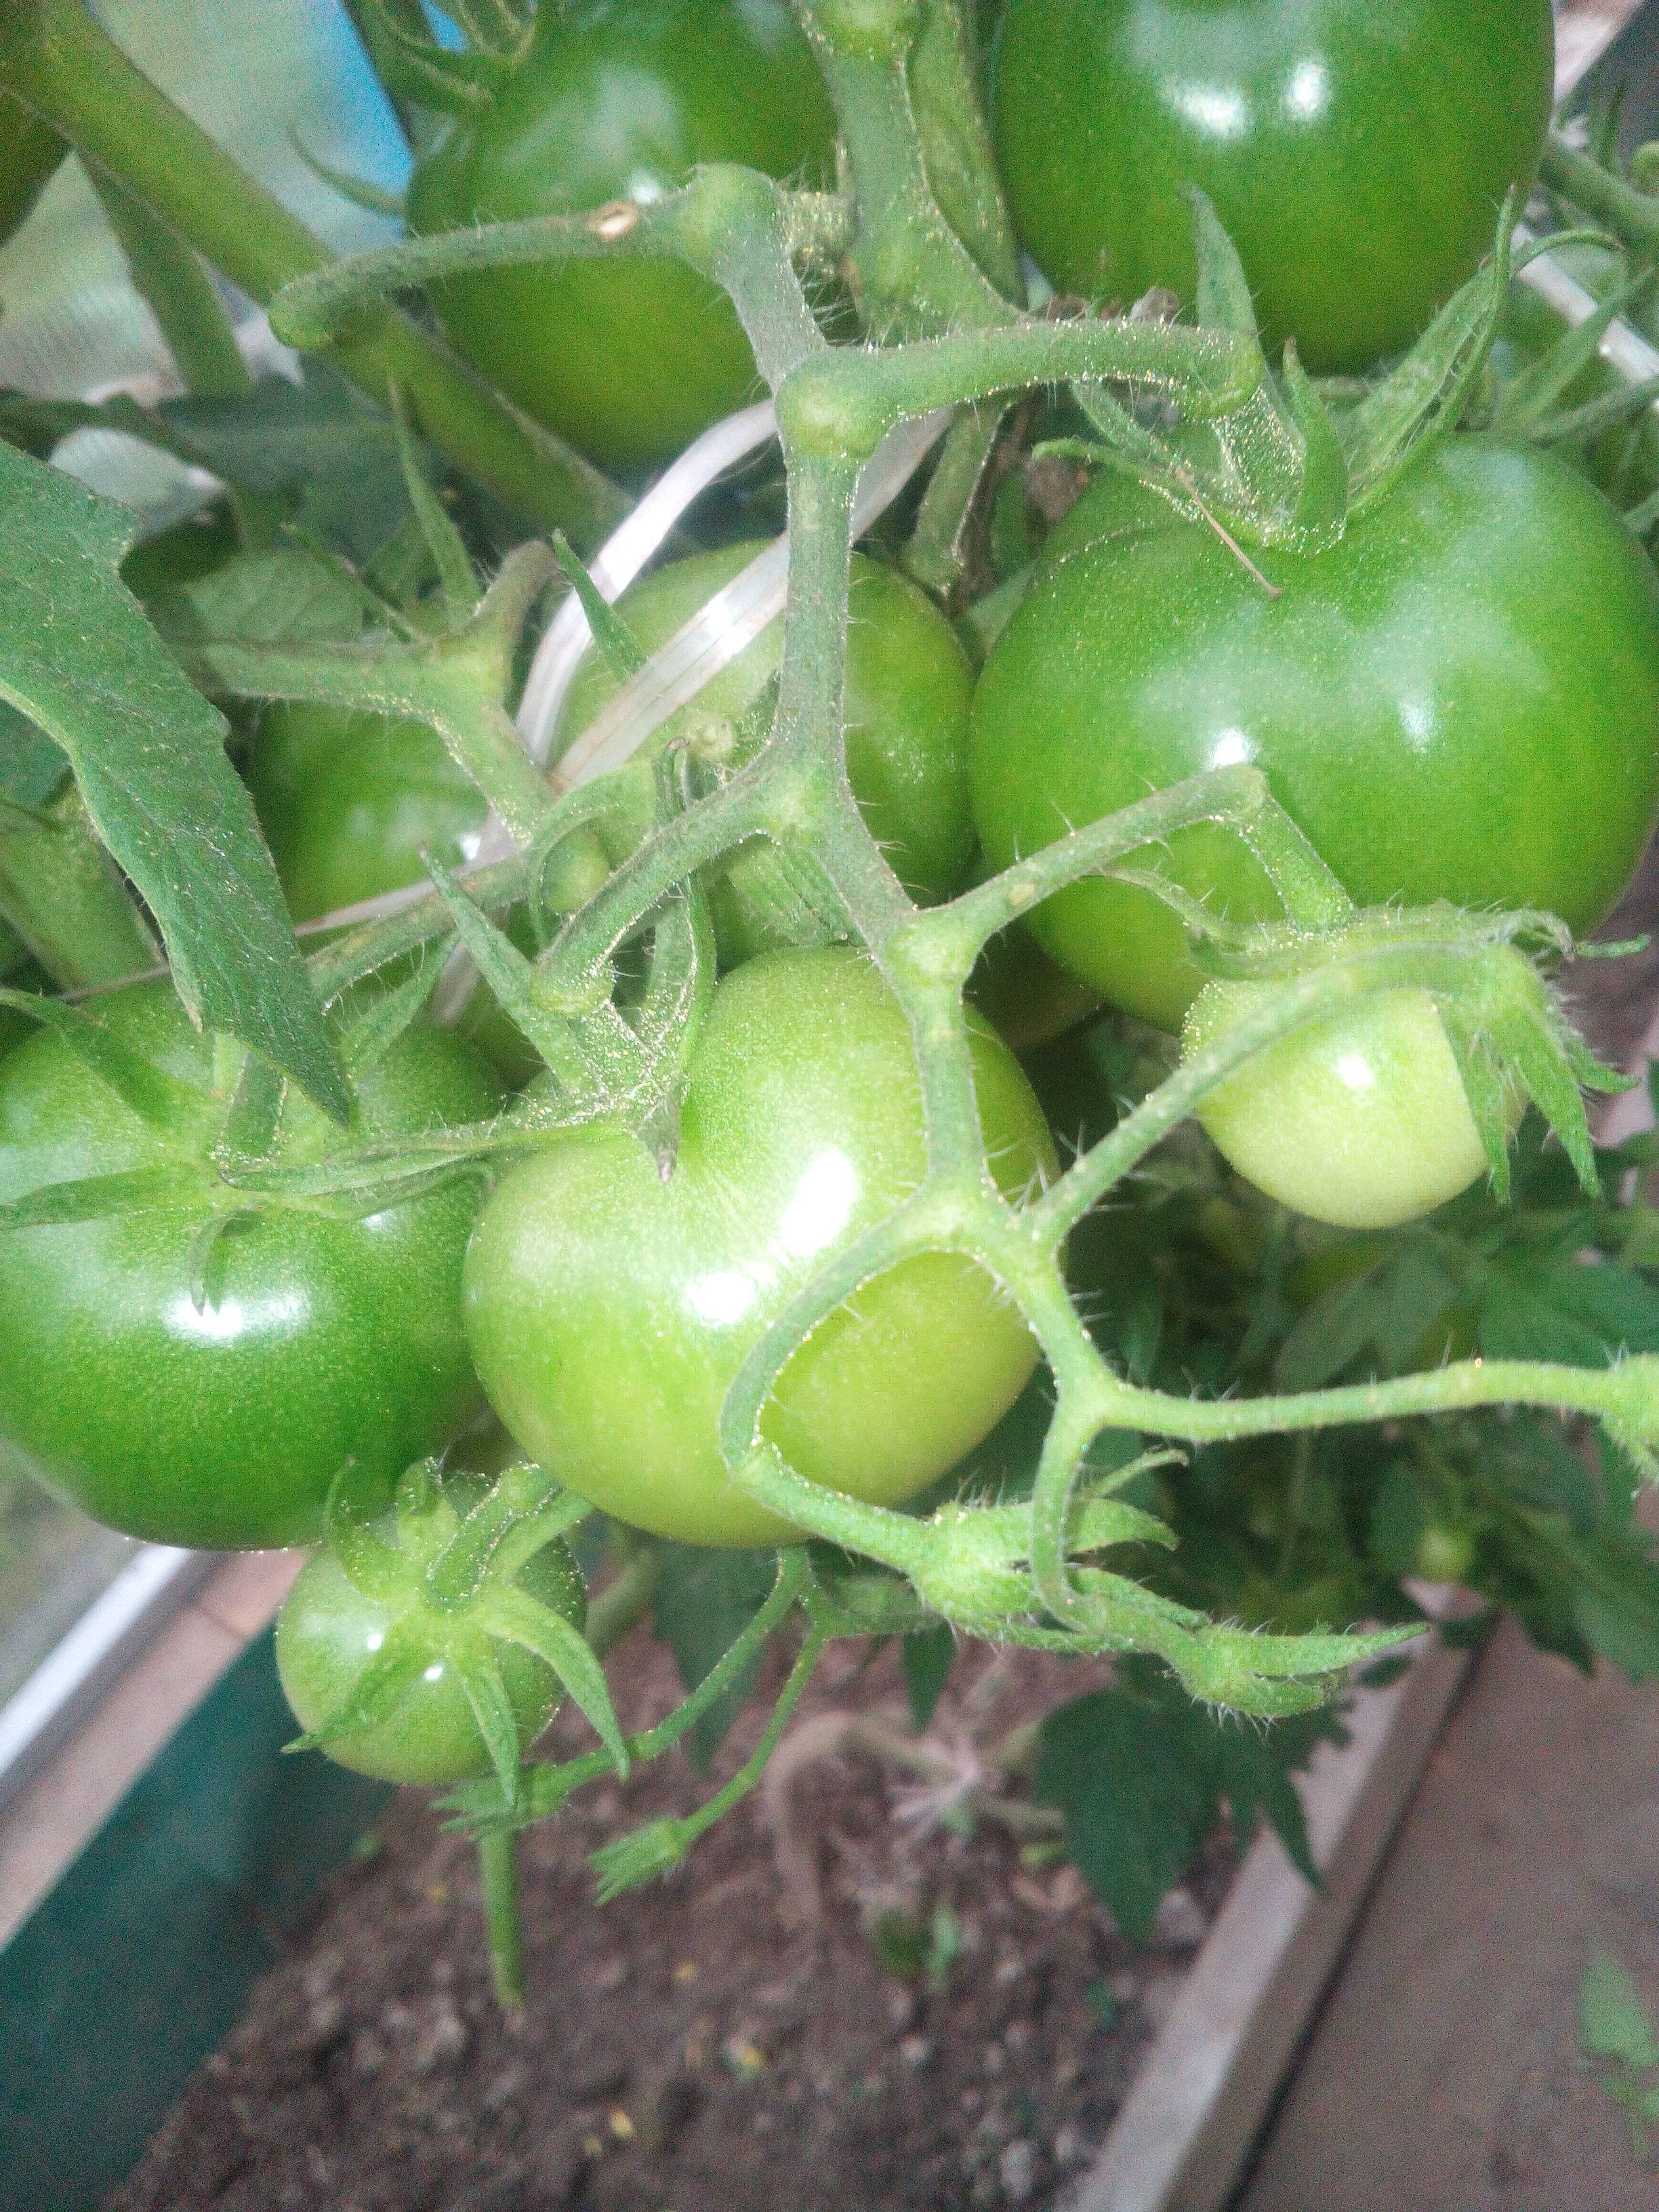 Как в одну лунку сажать по два куста помидор? можно ли использовать любые томаты или нужны специальные?